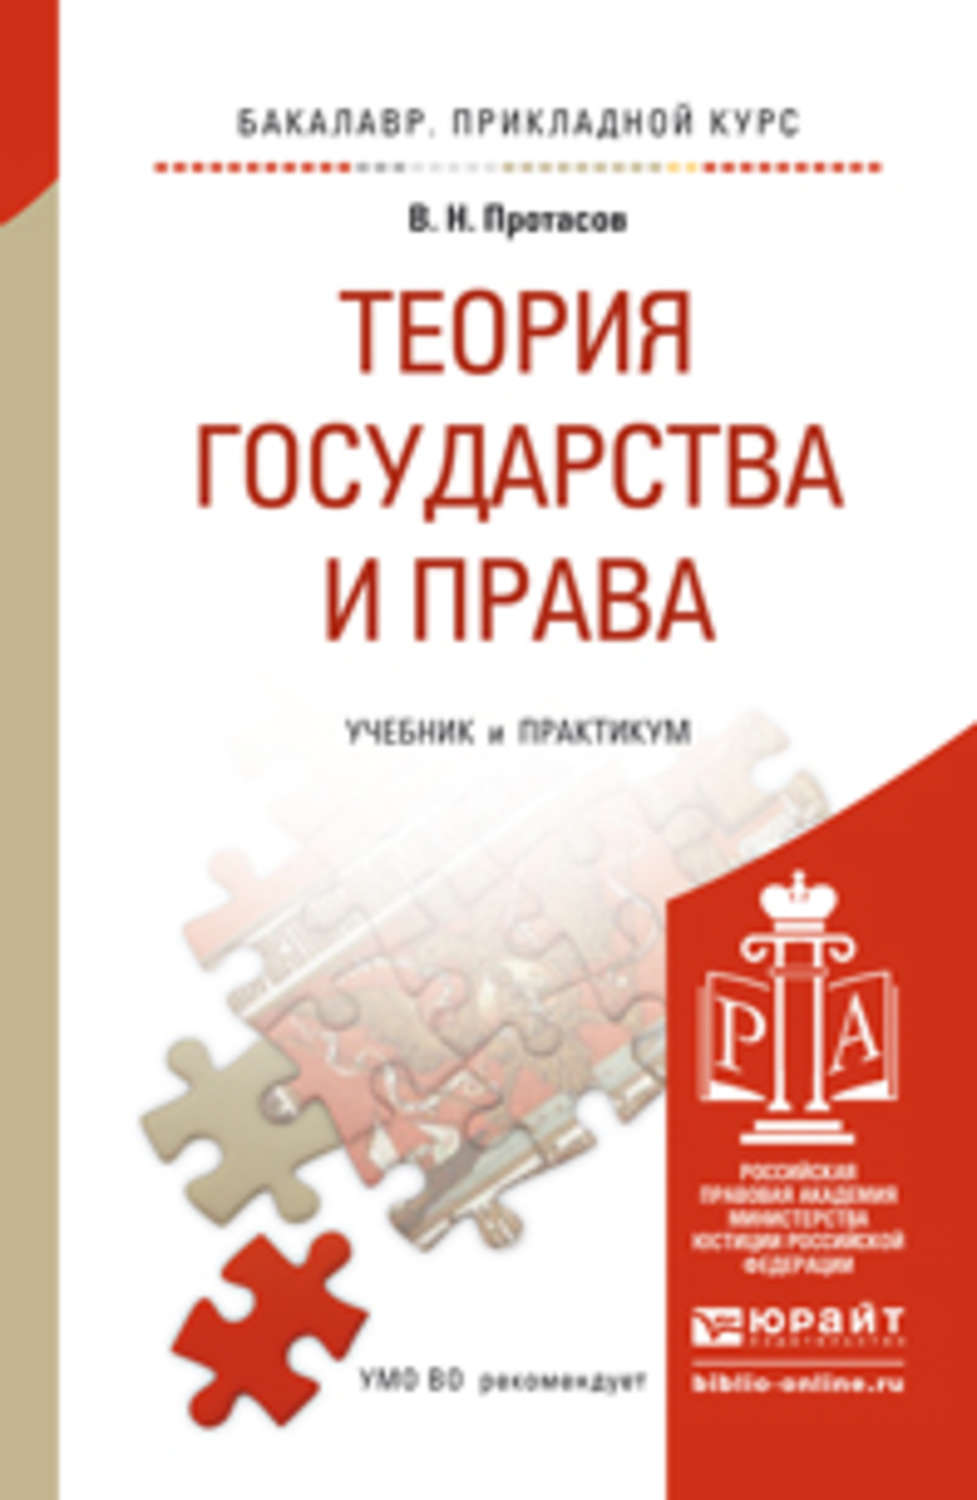 Скачать книгу венгерова теория государства и права